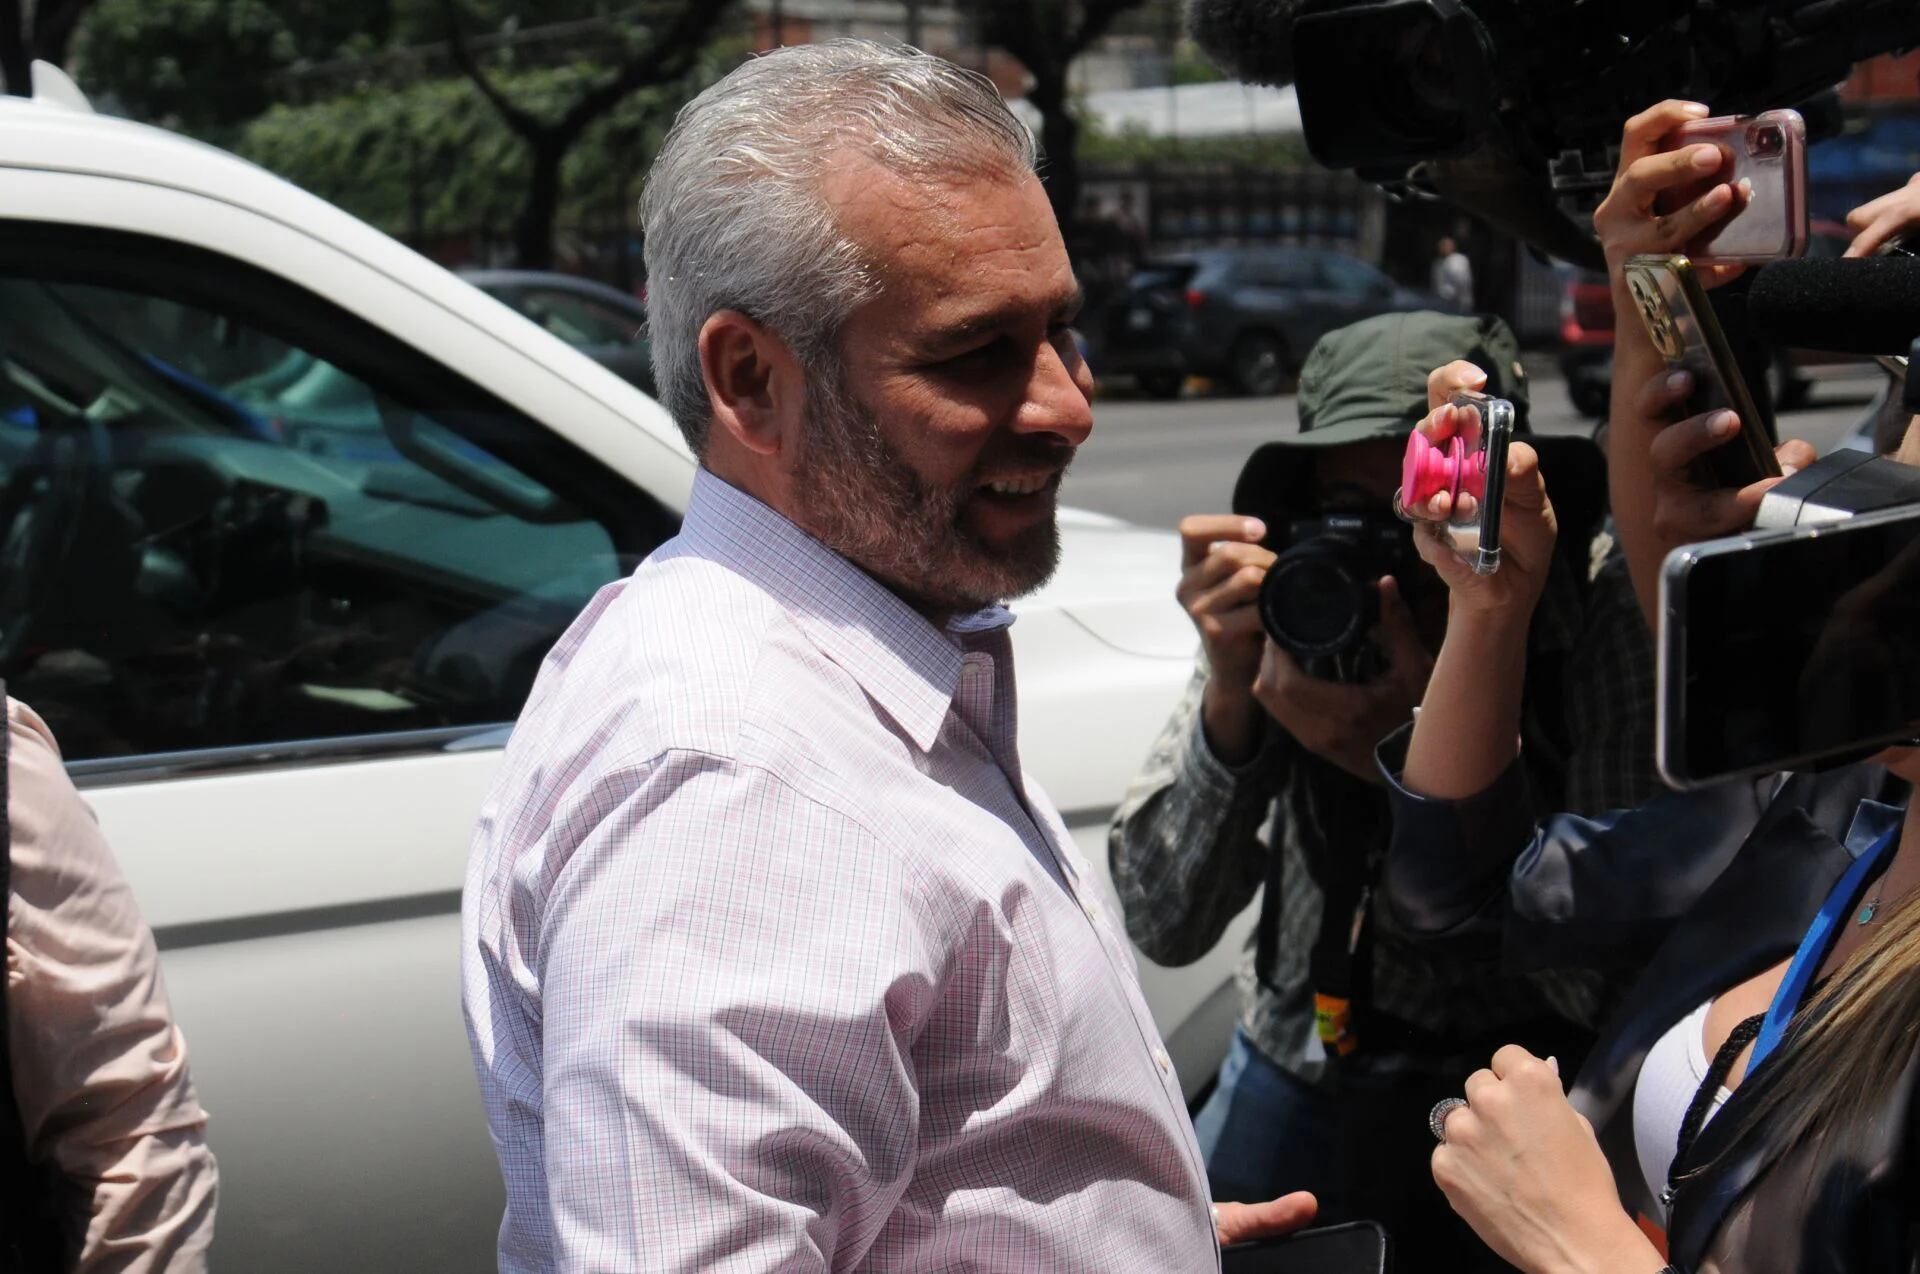 El padre acusó al gobernador de Michoacán de ser "amigo" de los delincuentes. FOTO: DANIEL AUGUSTO /CUARTOSCURO.COM